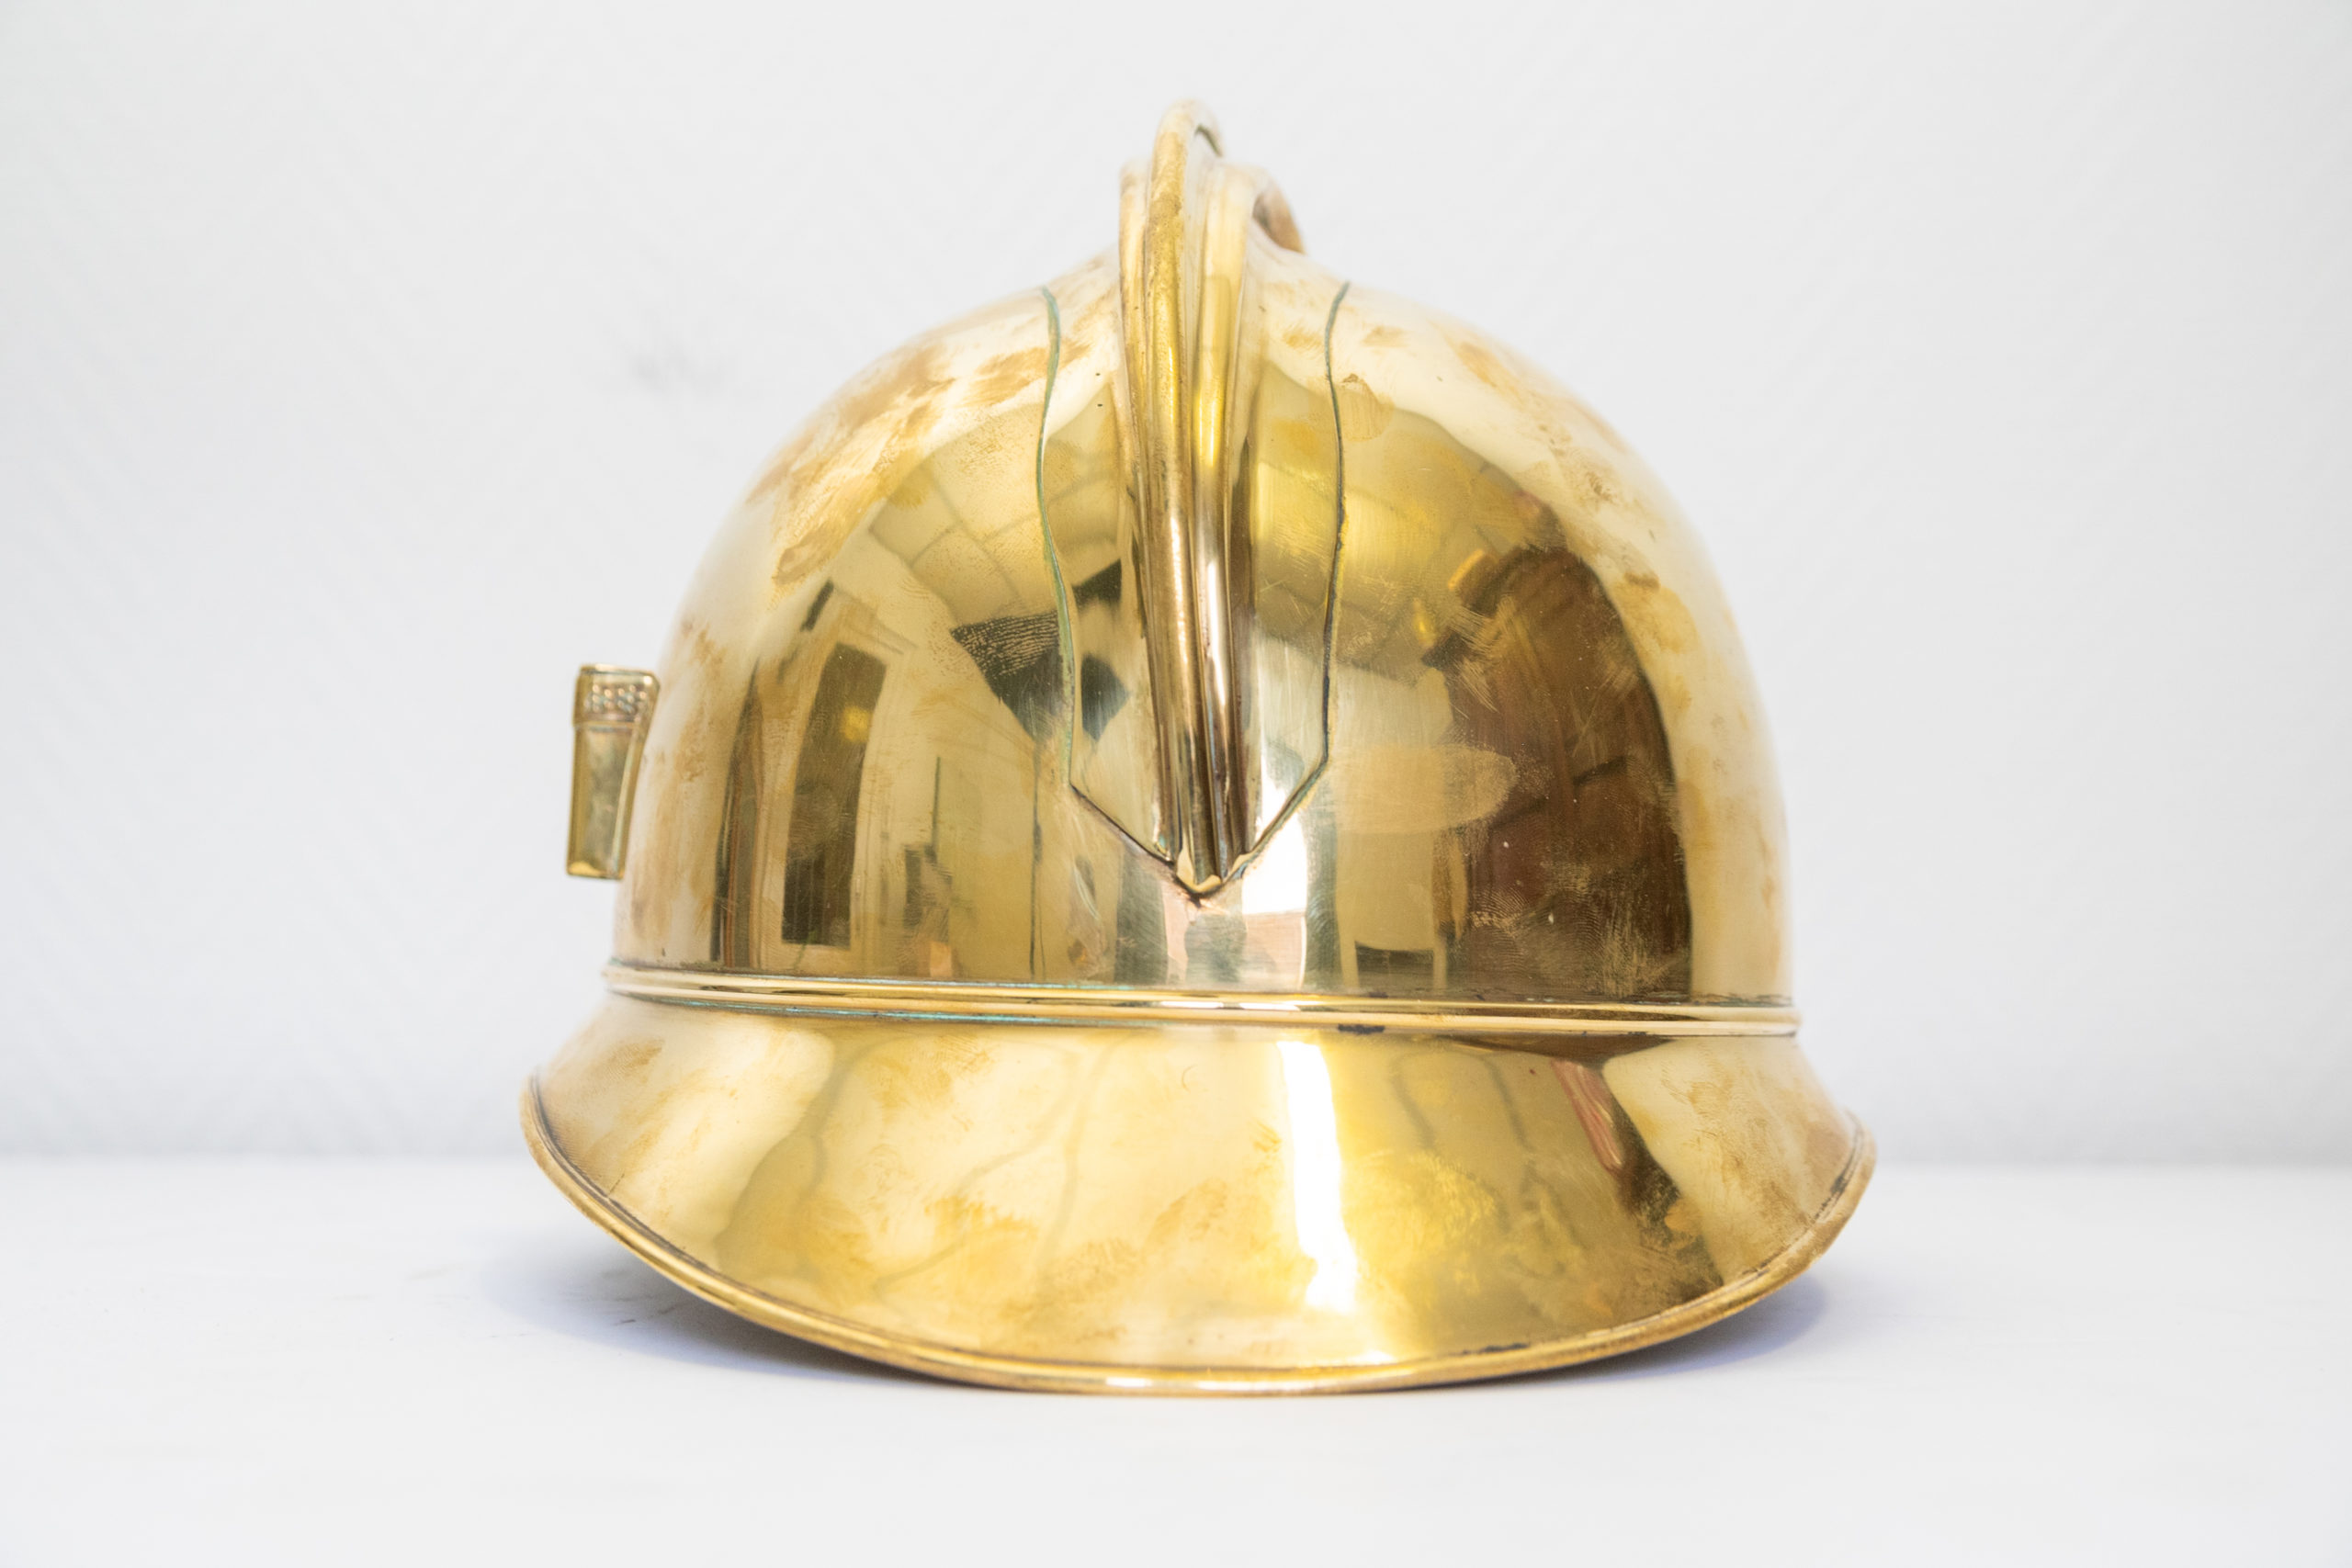 casque-sapeur-pompier-france-1880-XIXe-laiton-doré-aurore-morisse-chestret5-Antiquaire-affaireconclue5